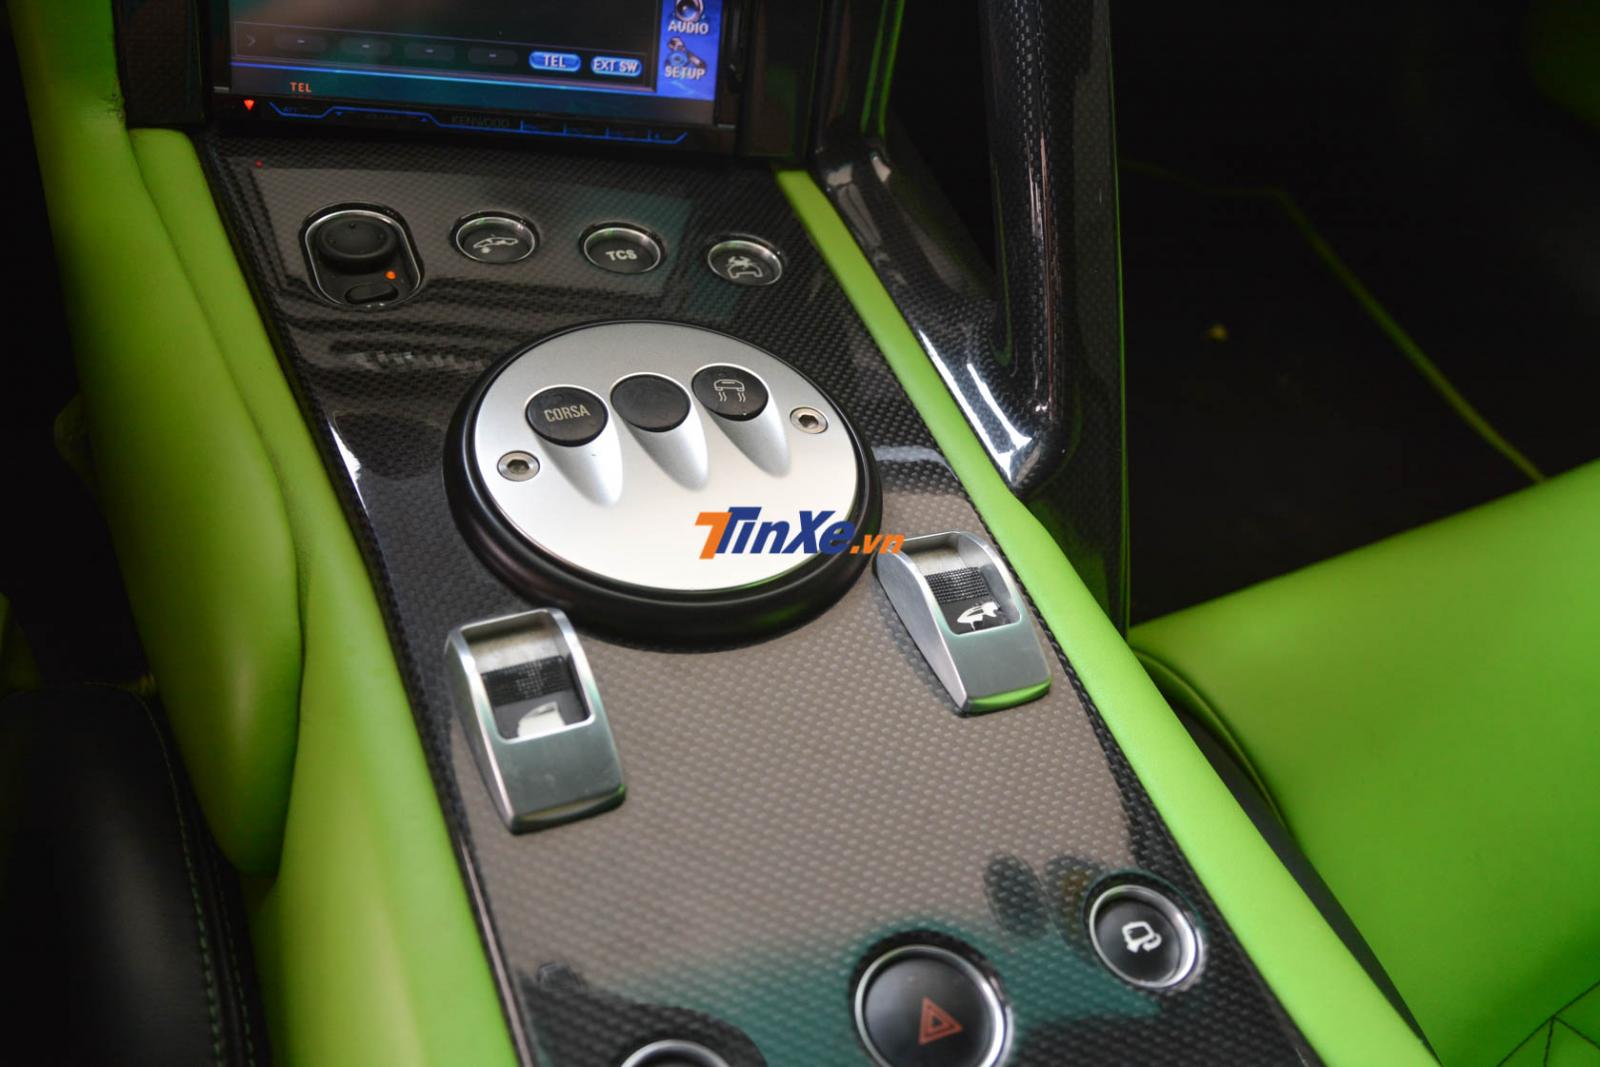  Cận cảnh bảng điều khiển trung tâm của Lamborghini Murcielago LP640 mang màu sơn xanh cốm